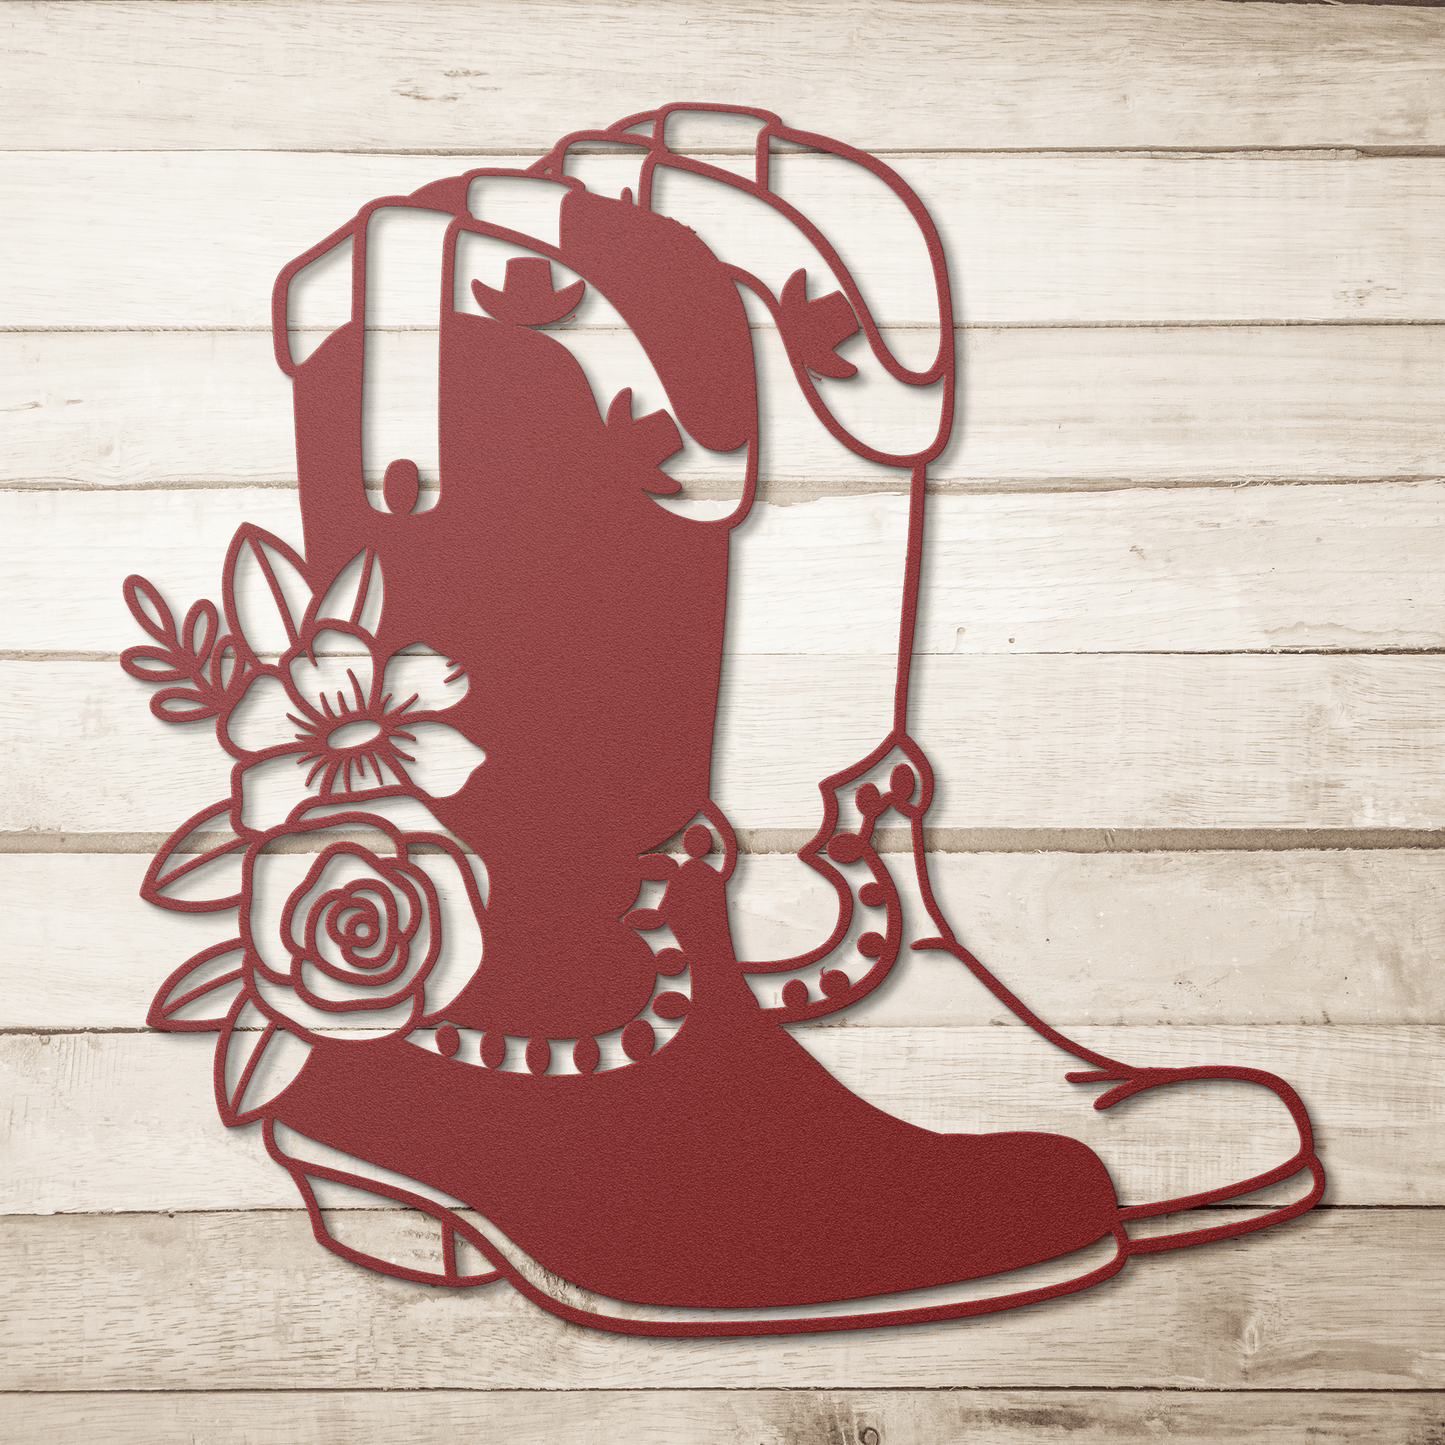 Floral Cowboy boots Decorative metal wall art